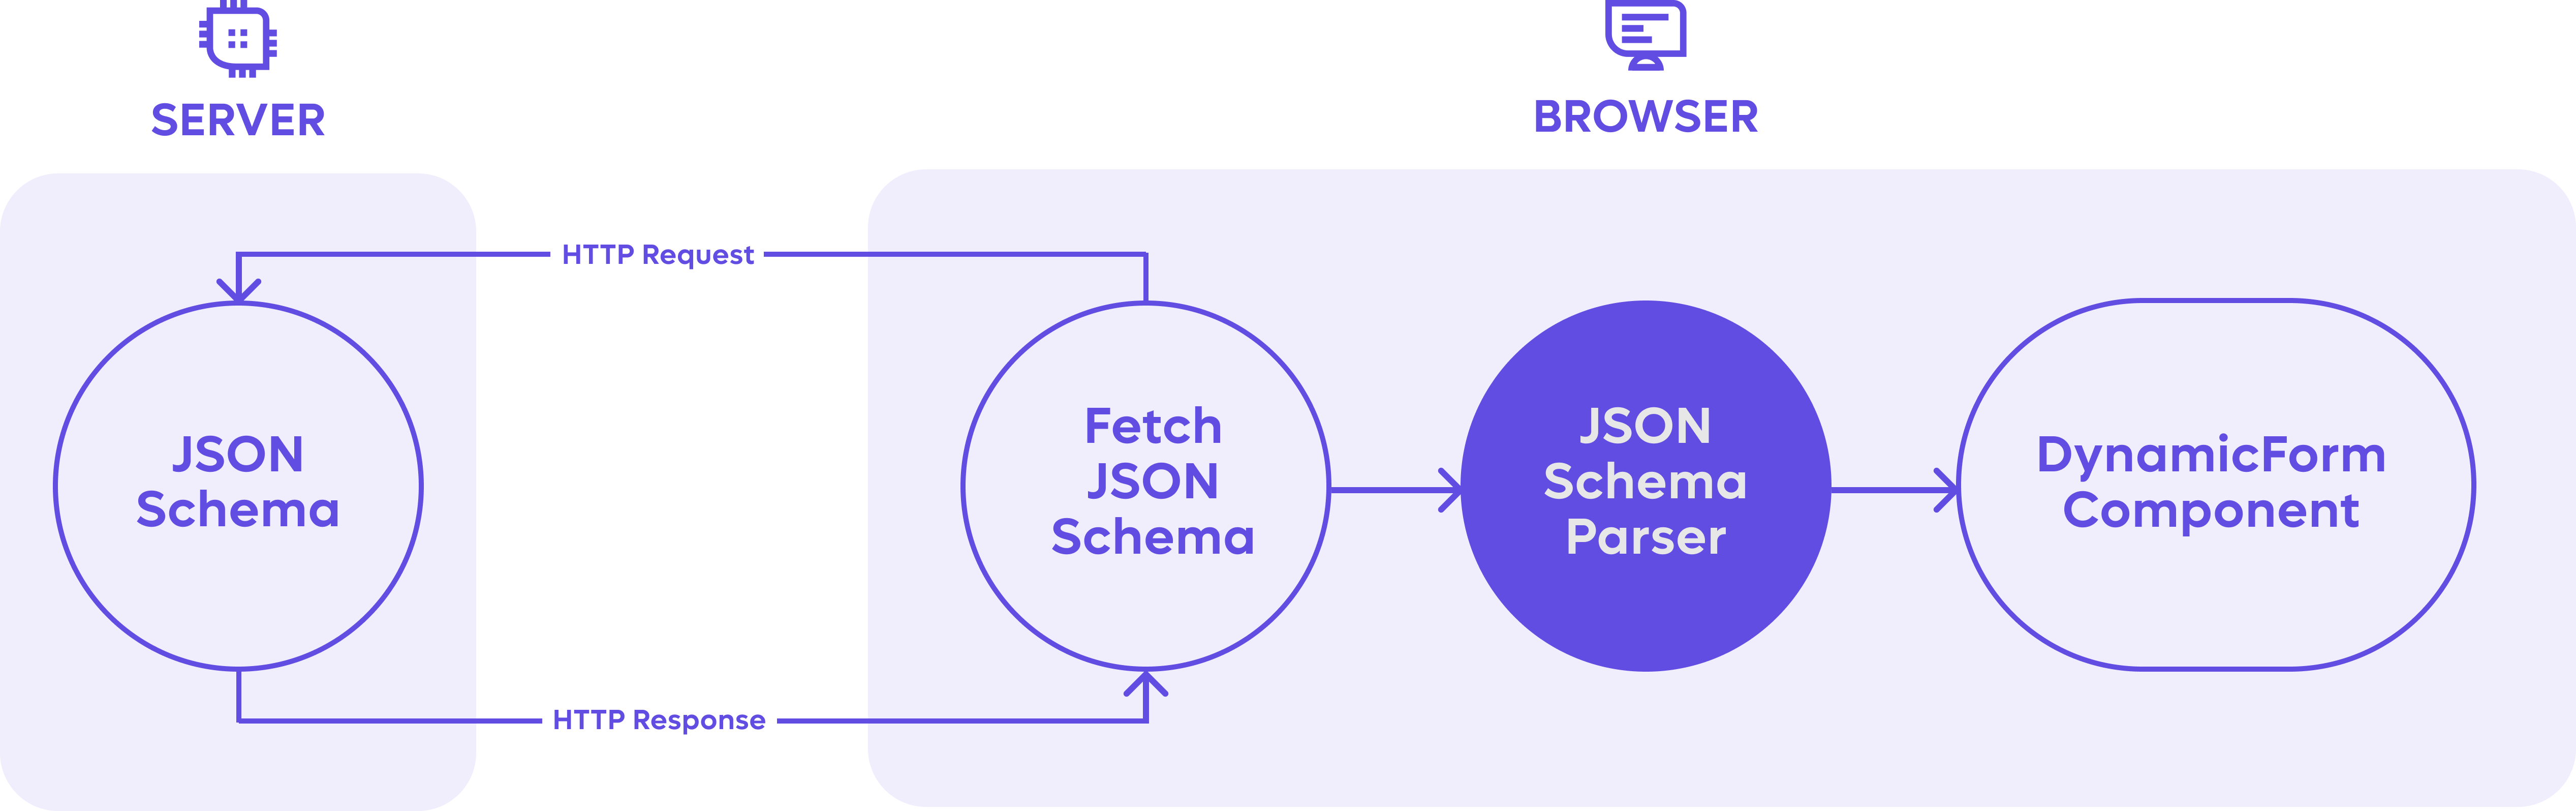 Flowchart explaining Remote's JSON Schema parsing